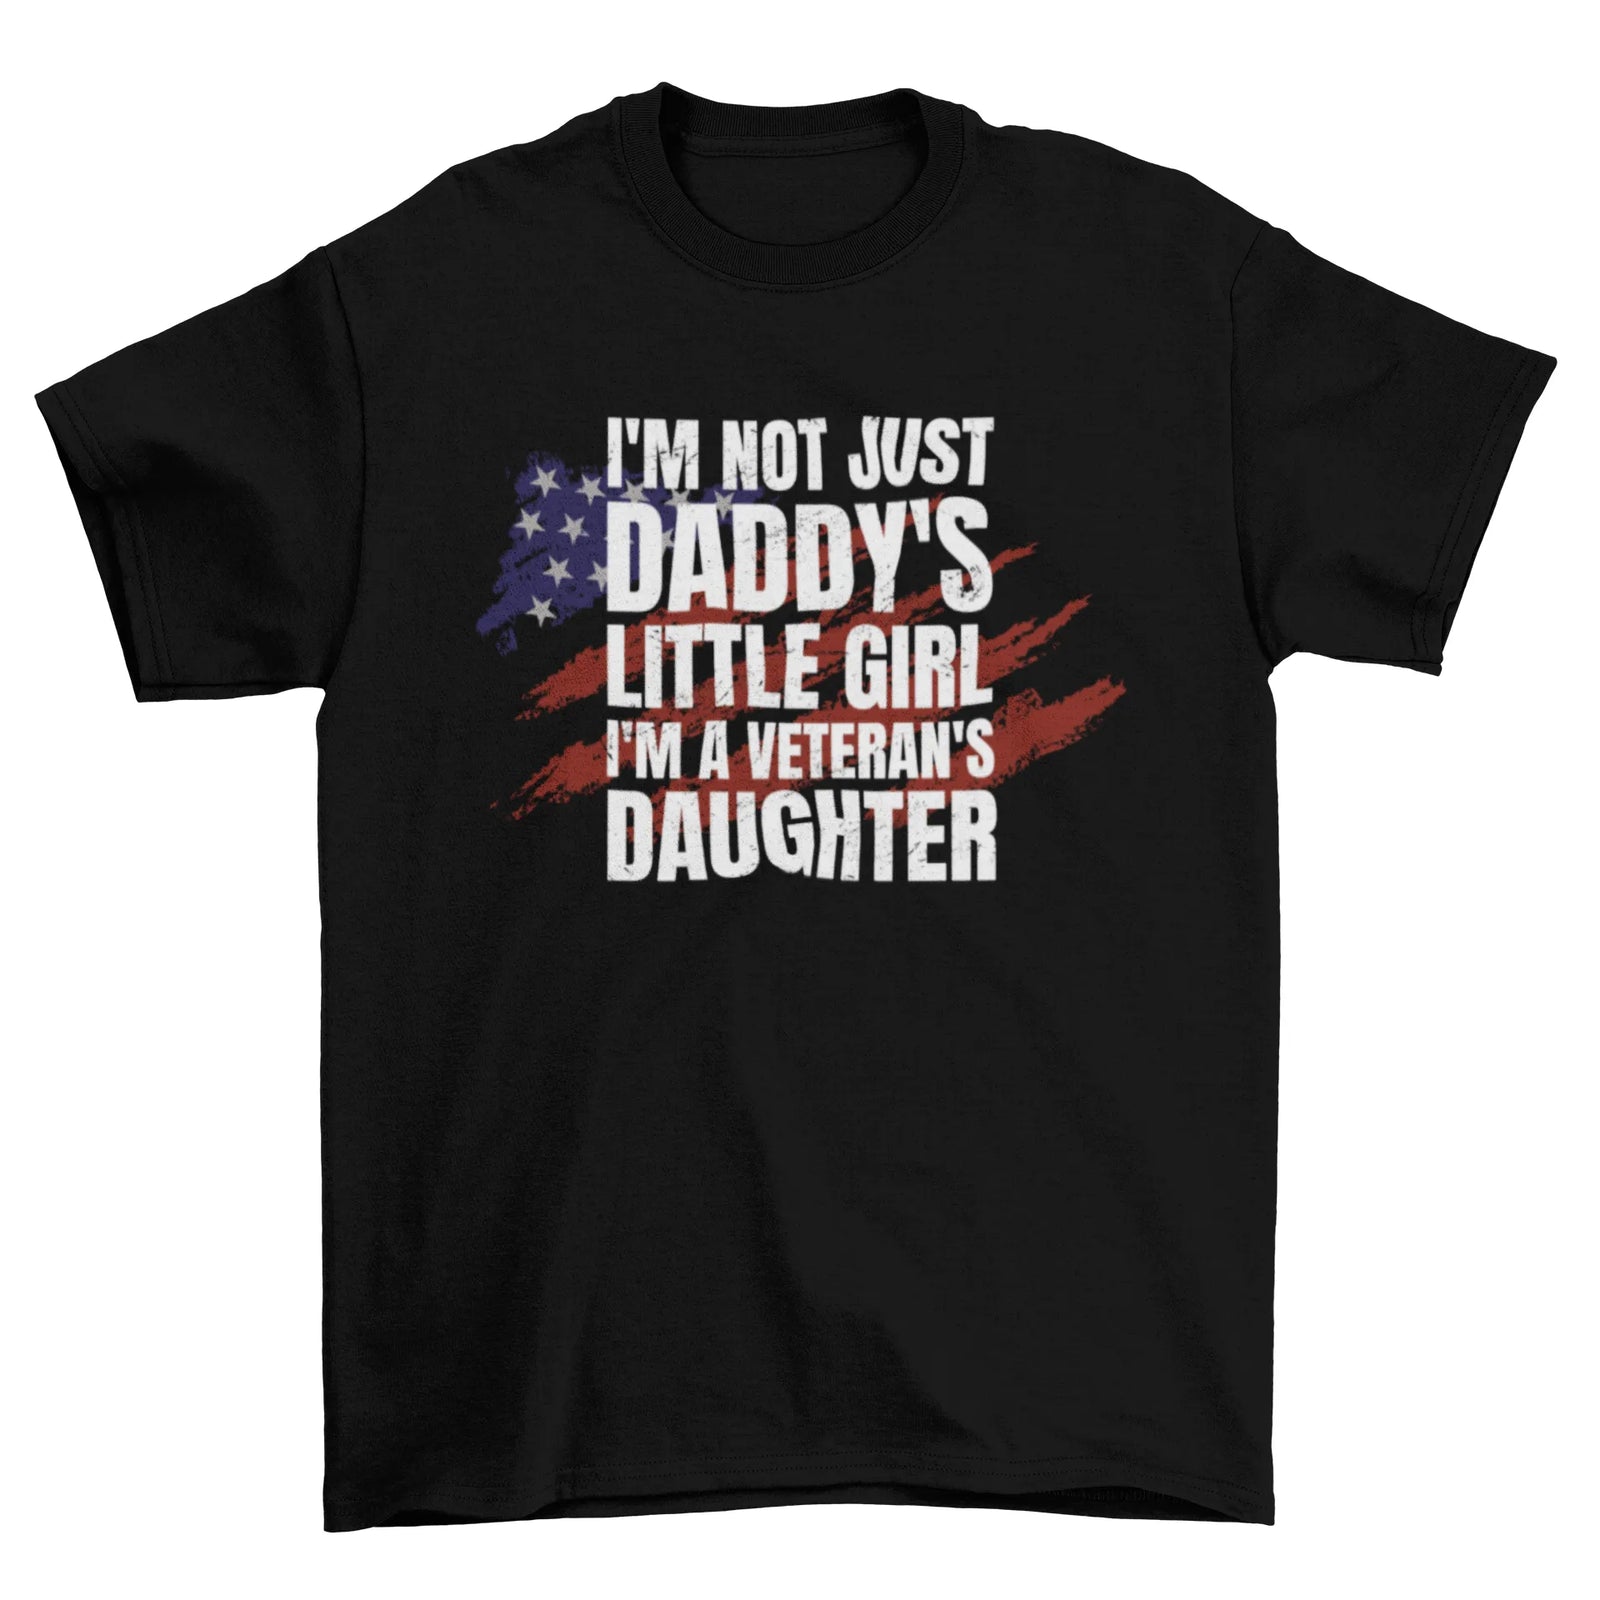 Veteran's Daughter T-shirt